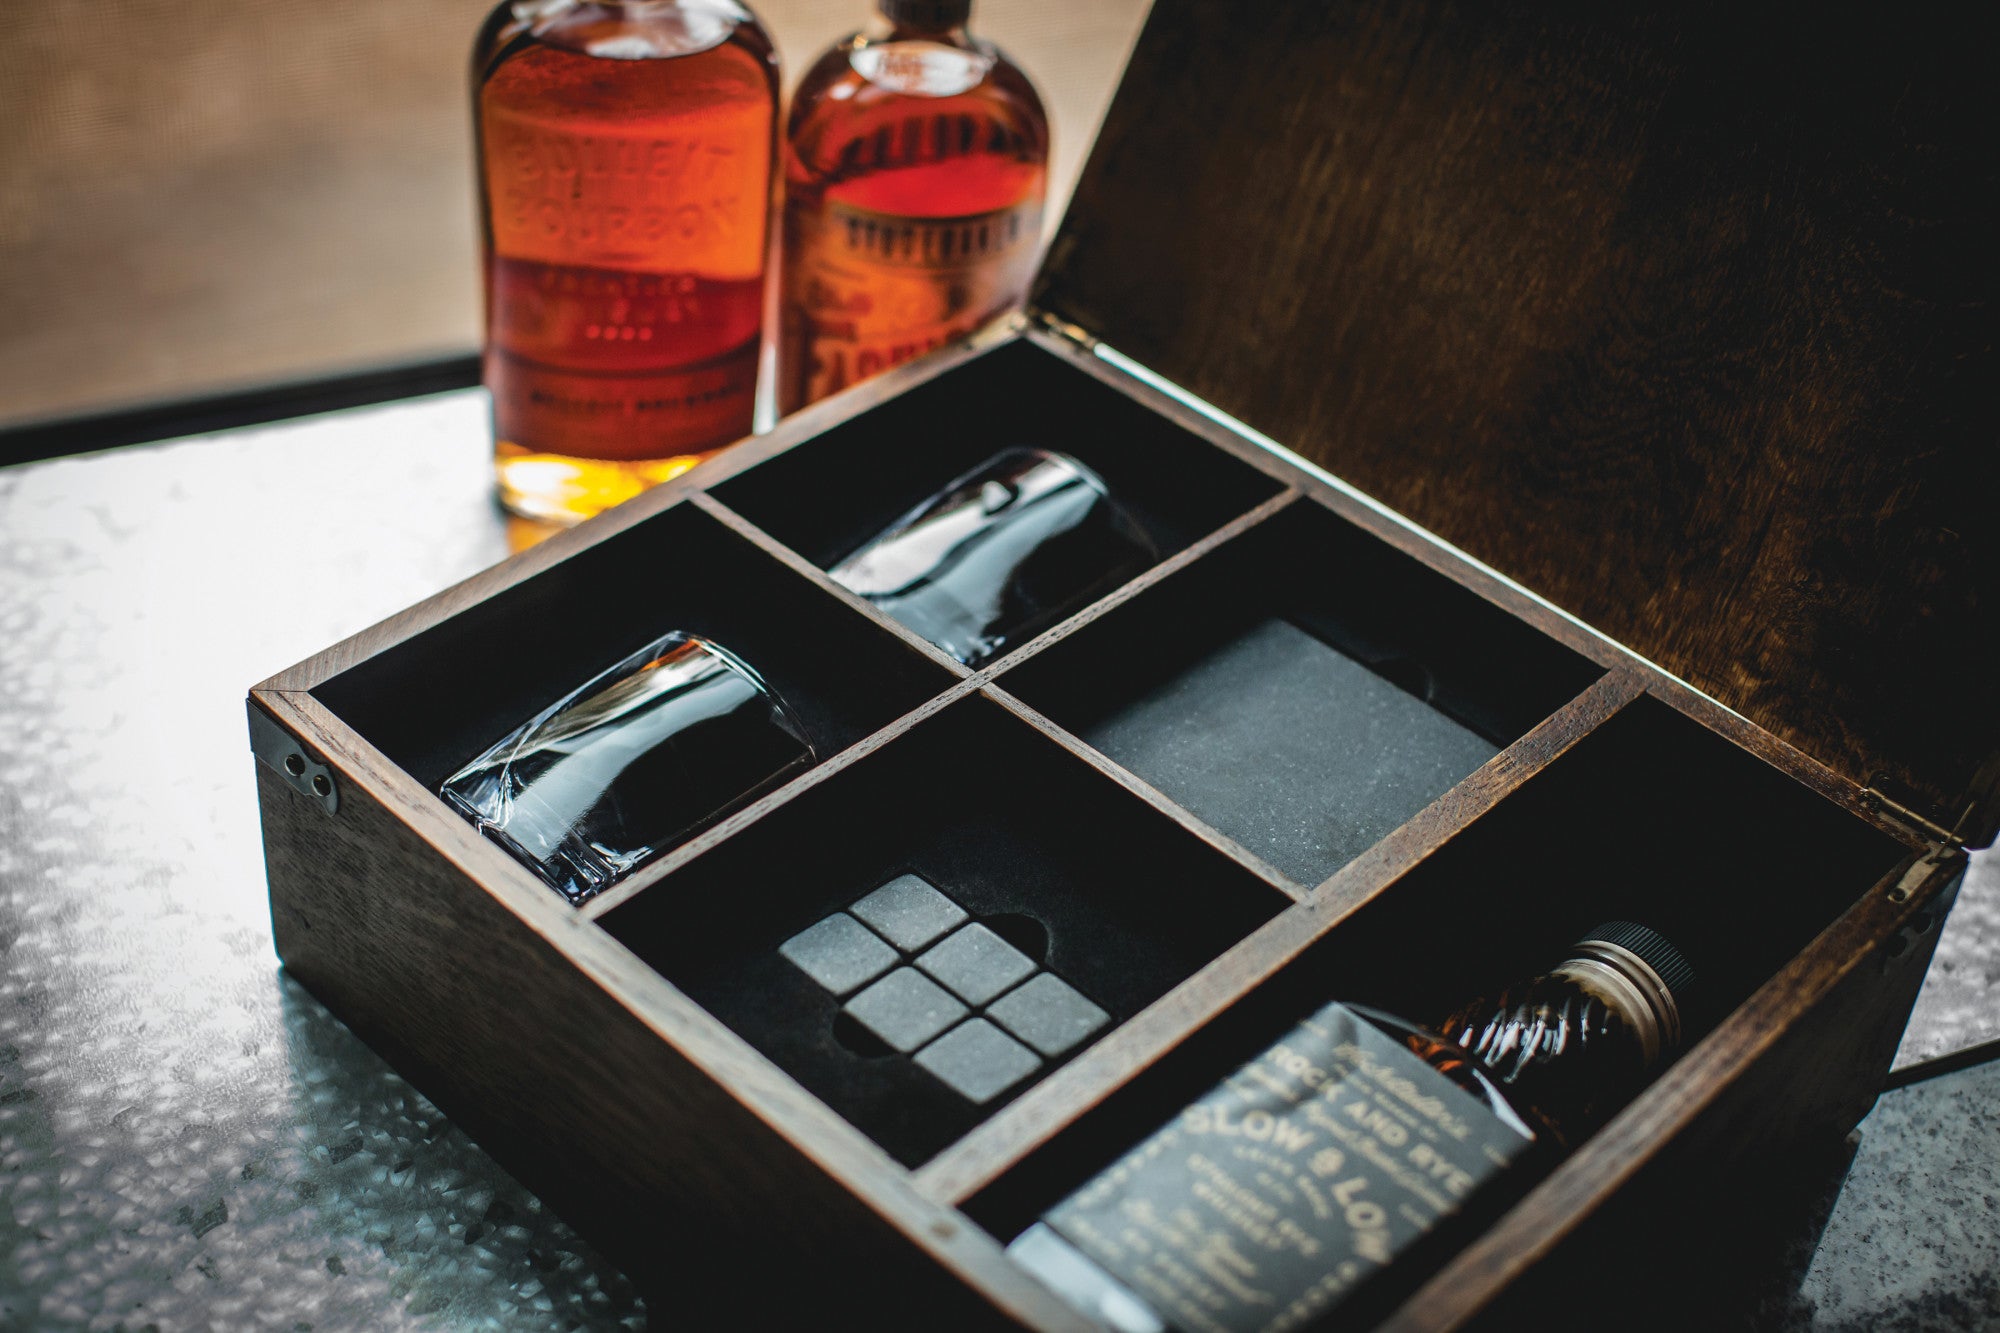 Alabama Crimson Tide - Whiskey Box Gift Set